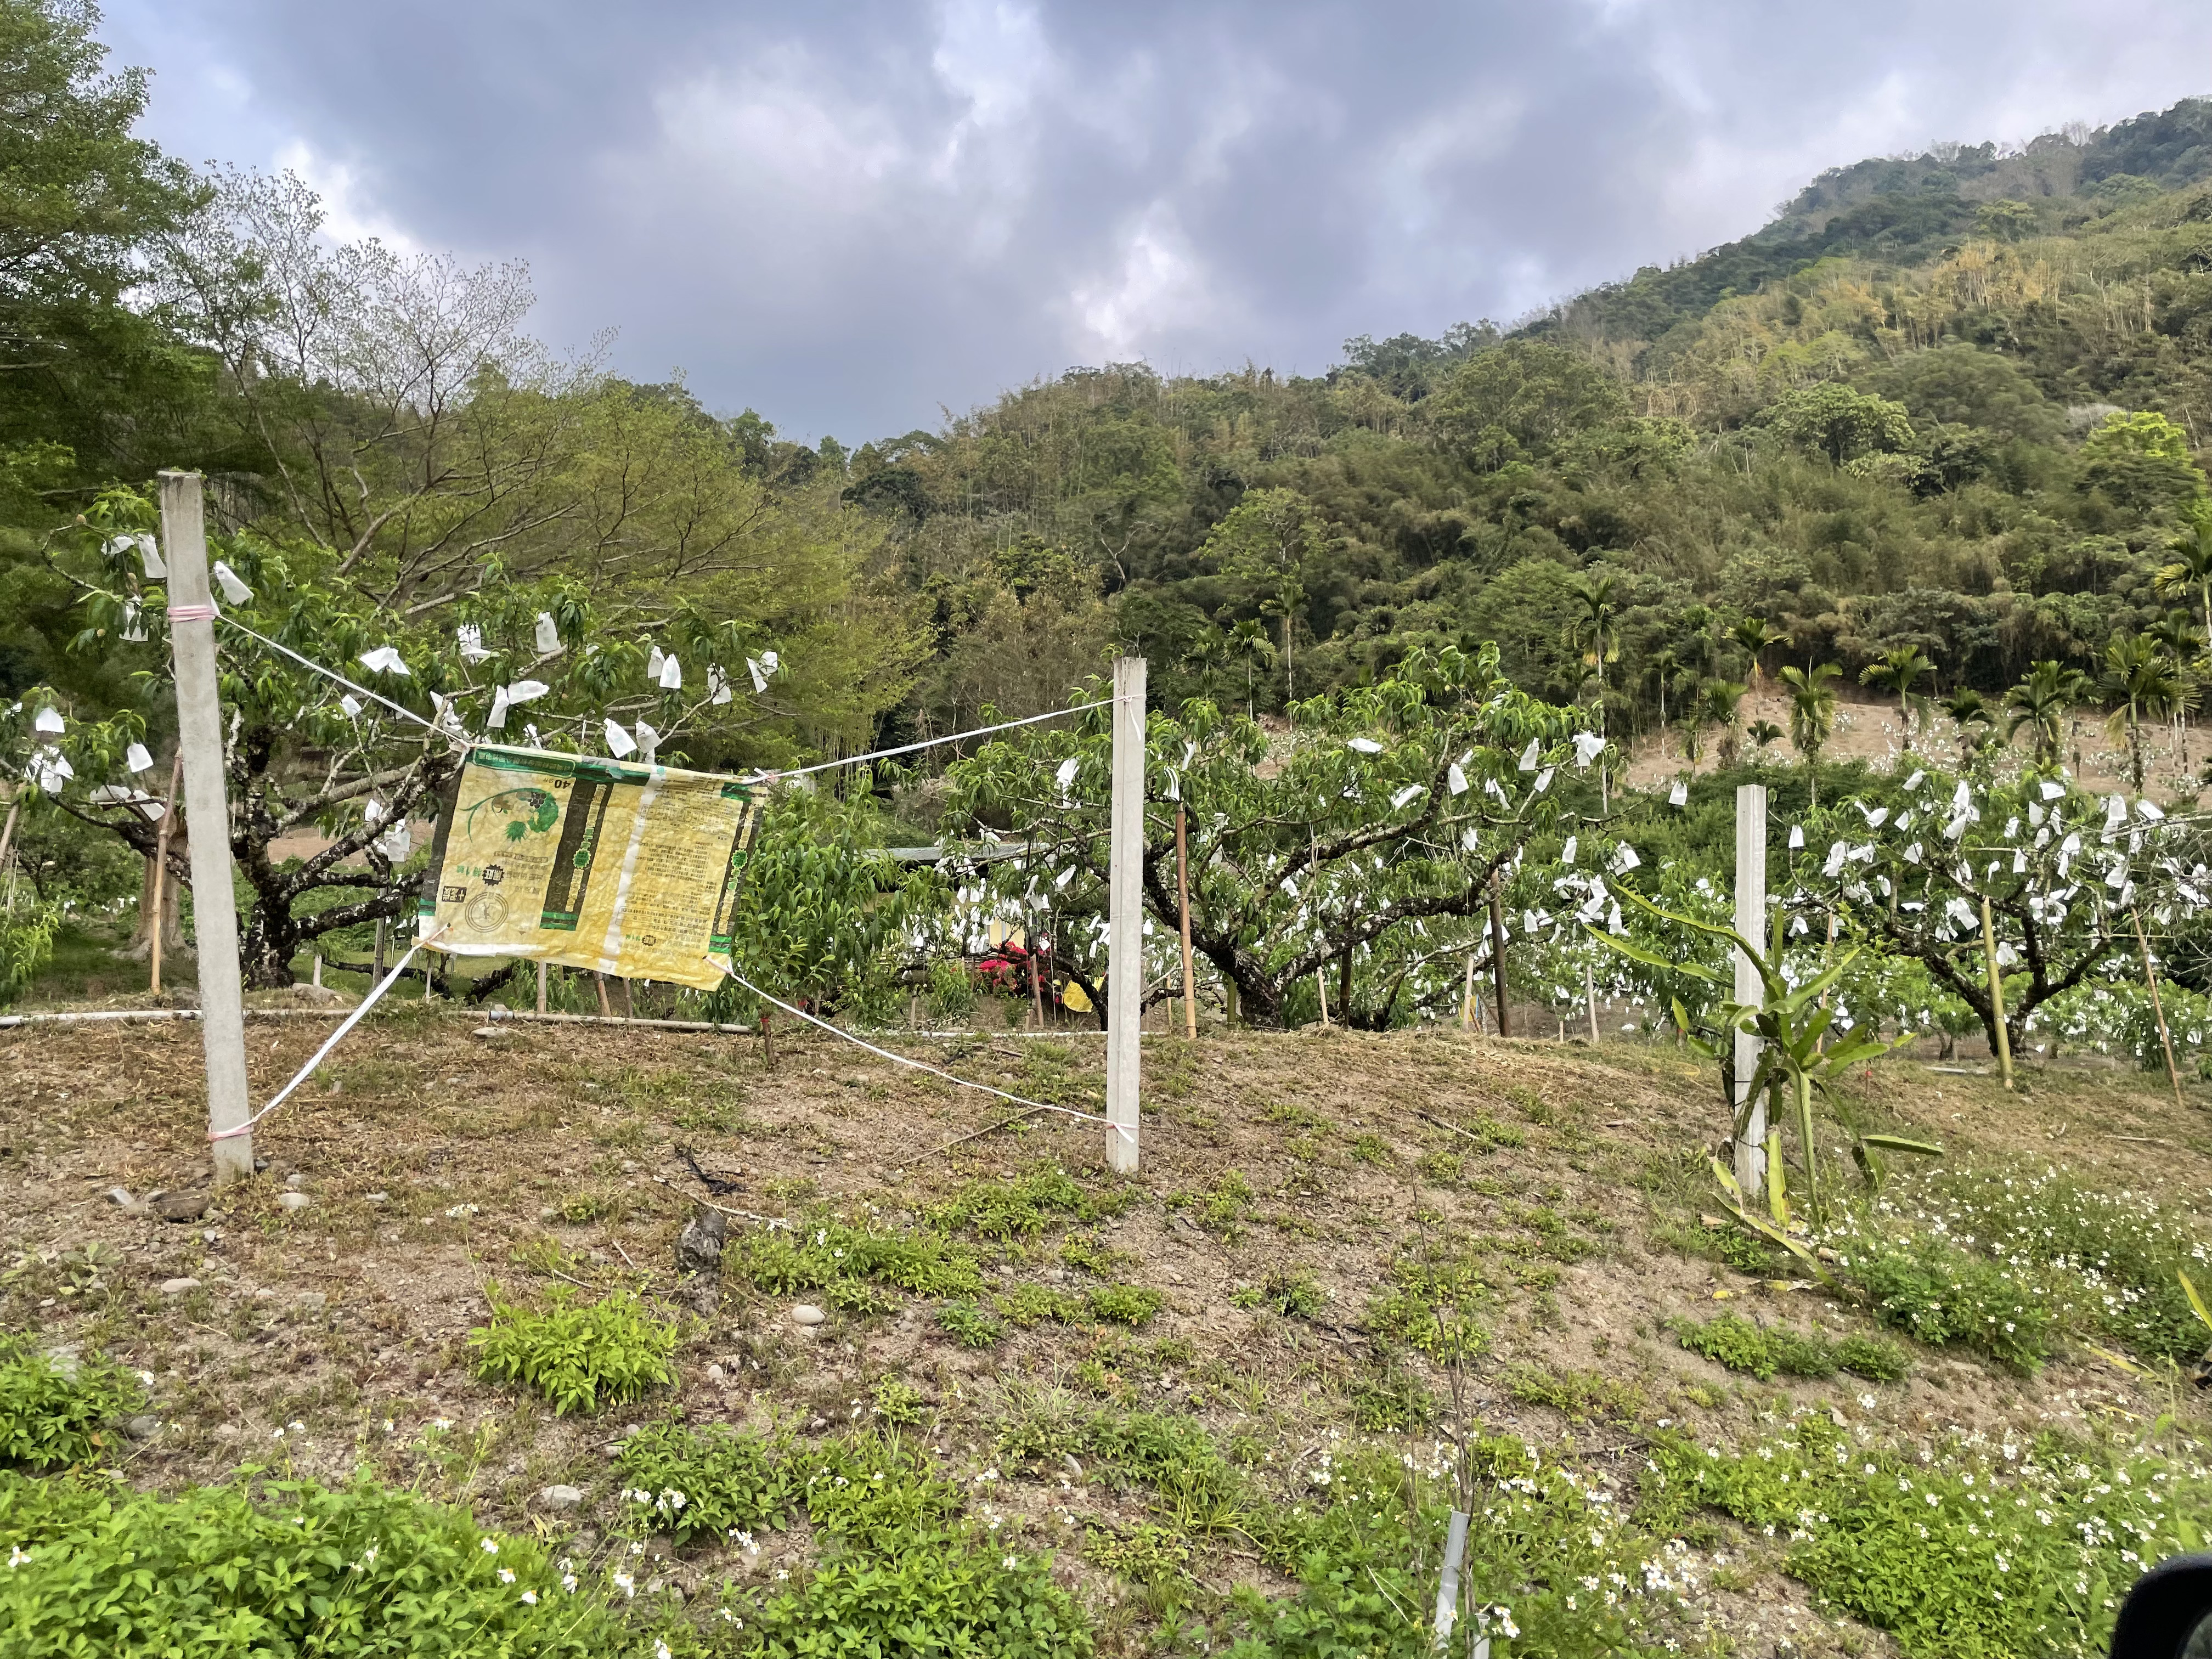 高雄市那玛夏区的水蜜桃逐渐成熟，但大多数农地并未架设电网防猴。记者蔡世伟／摄影